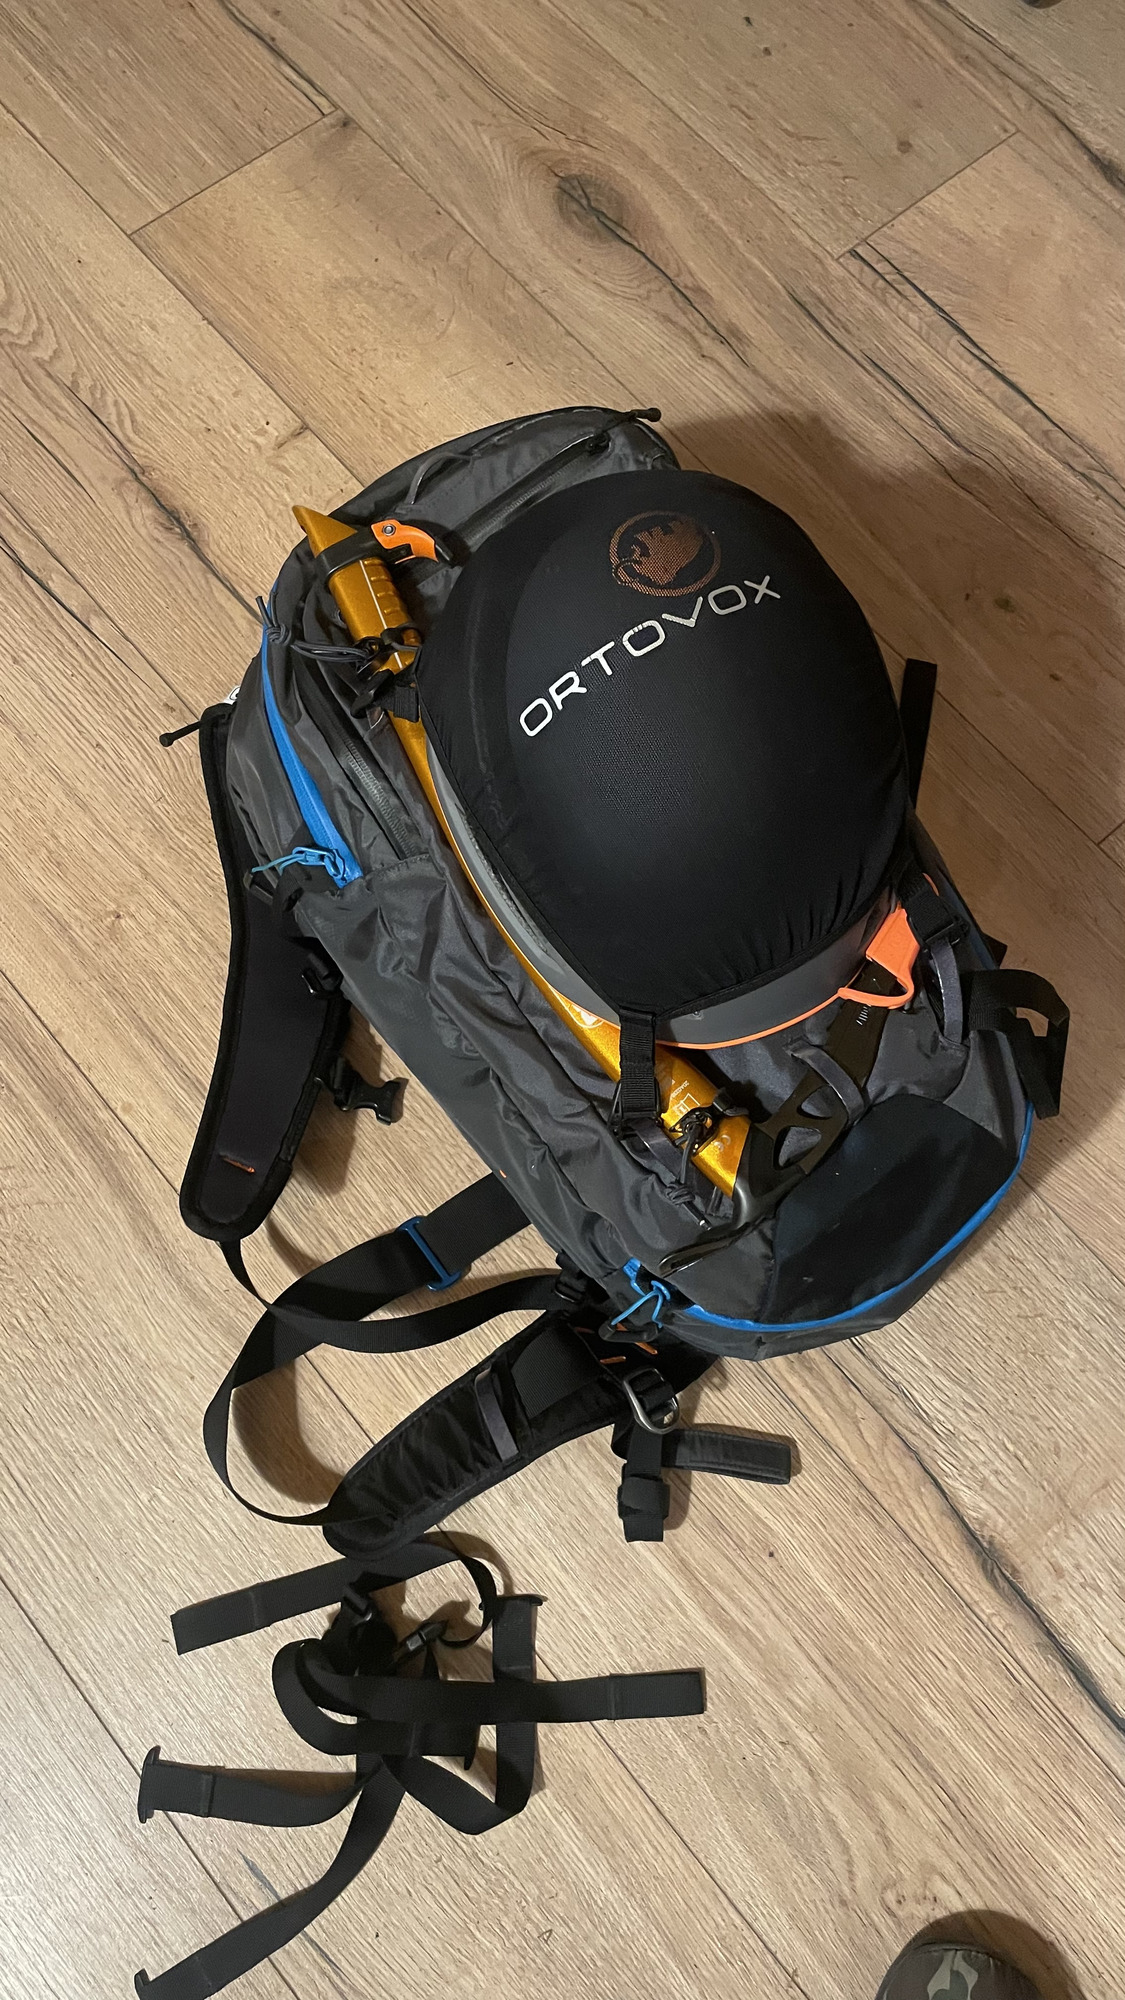 Ortovox Ascent 28 S Avabag